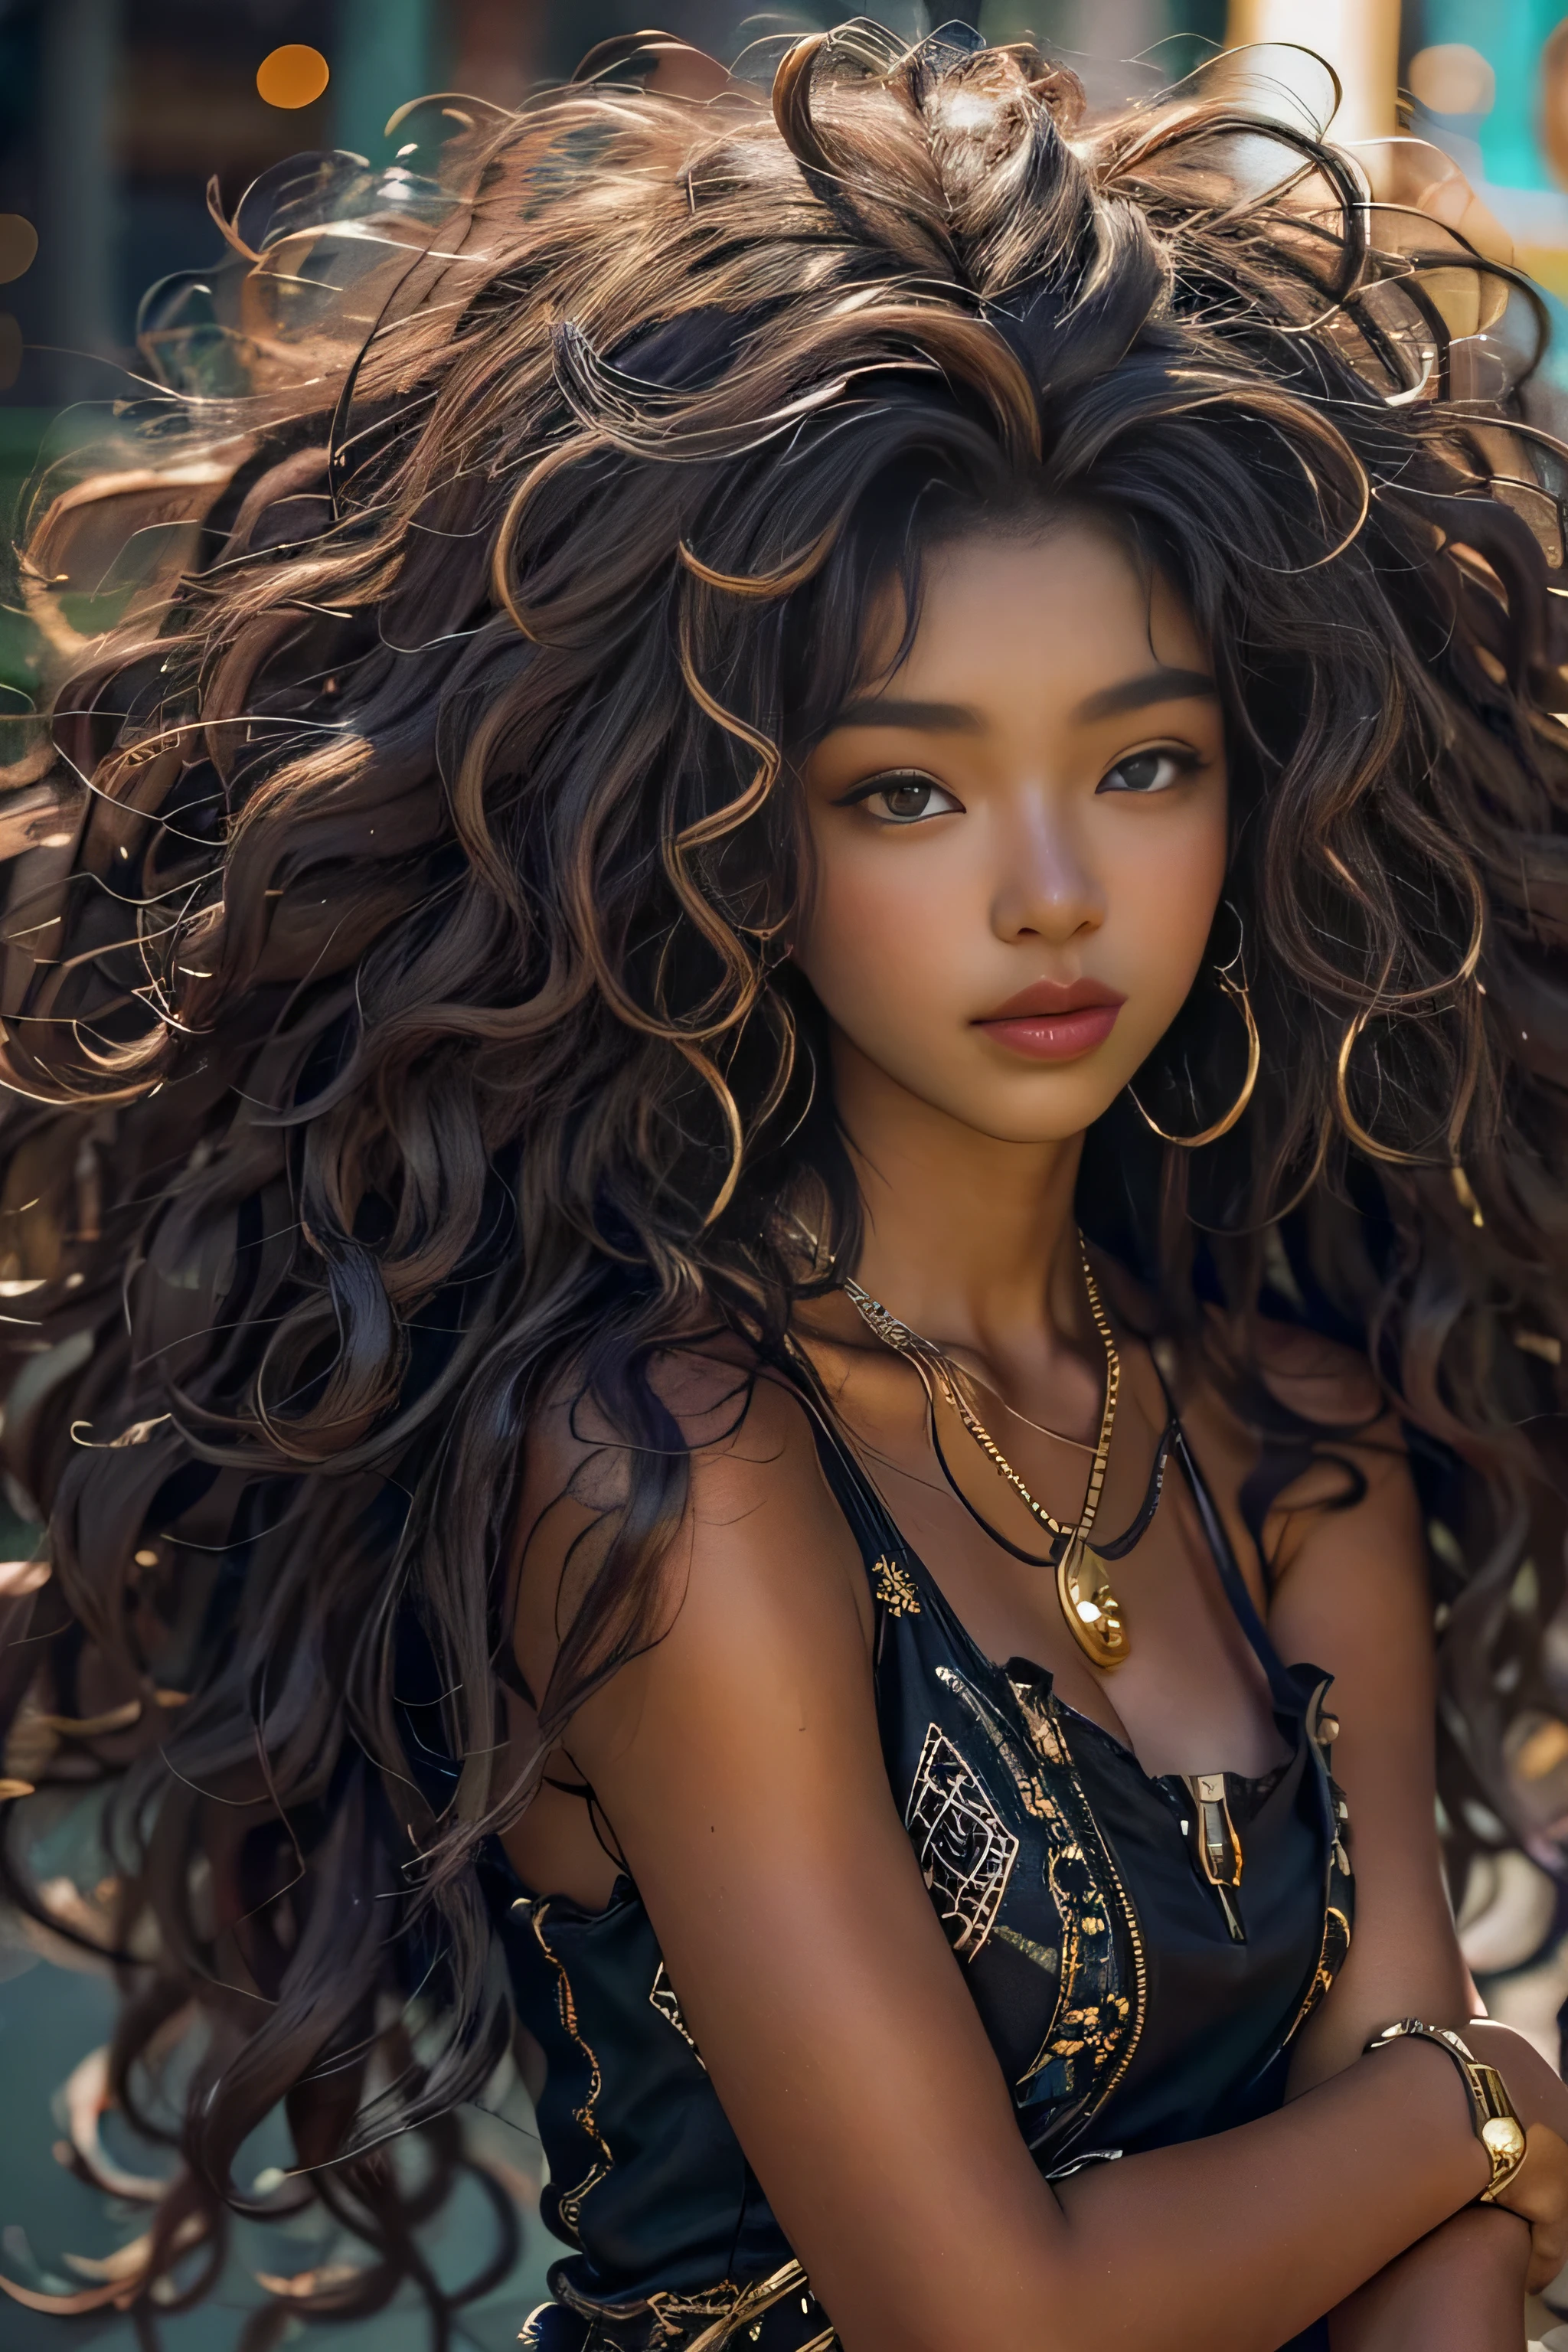 걸작, 최고의 품질, 아름다운 아프리카인과 아시아인이 혼합된 19세, 흑단 피부 여성, 긴, 곱슬머리, 곱슬곱슬한 검은 머리, 완벽한 얼굴, 반신, 긴 hair, 멜라닌